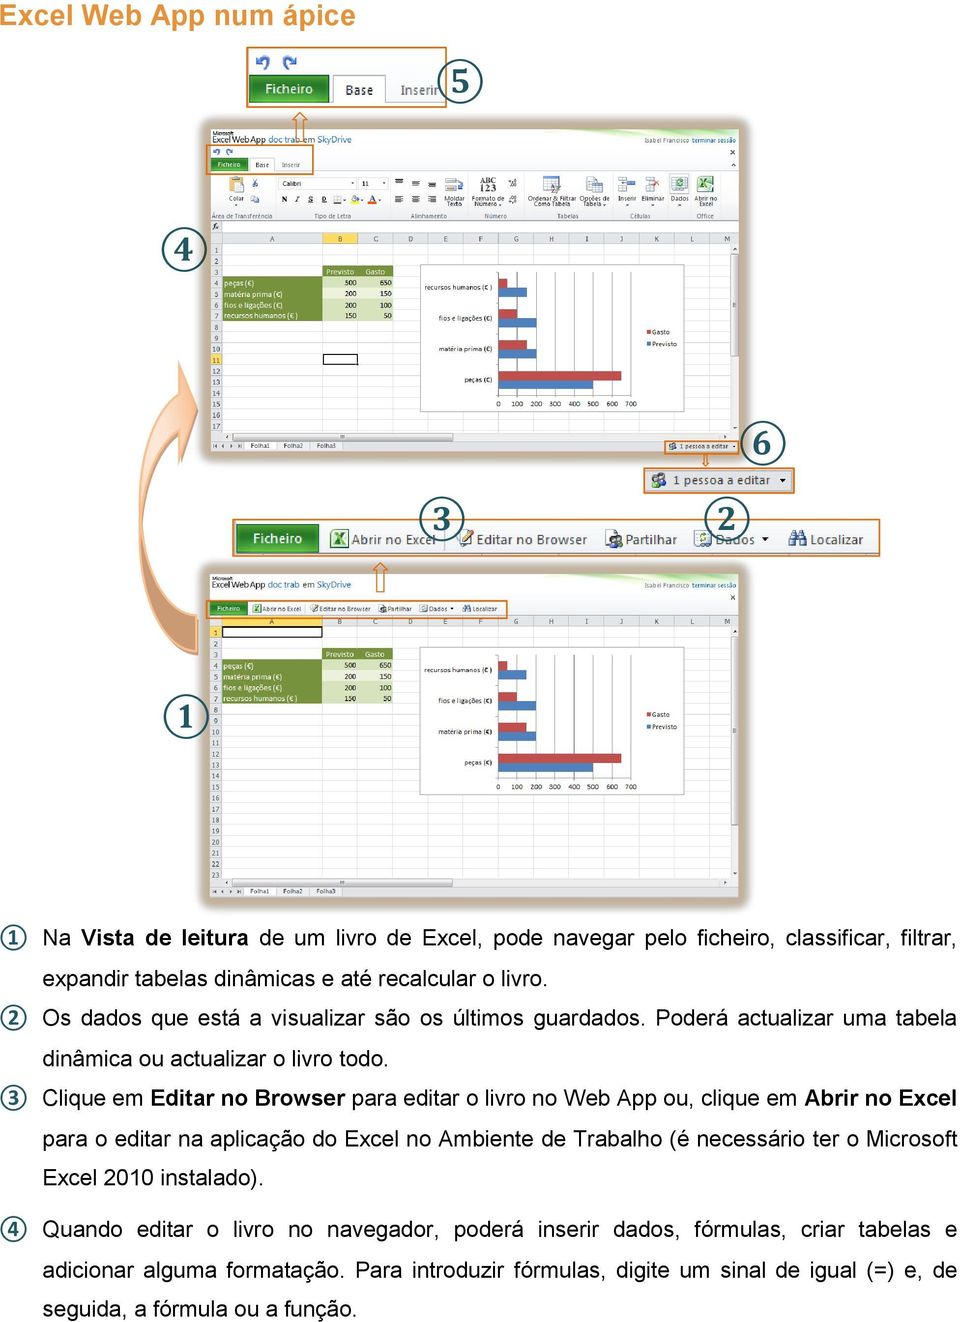 3 Clique em Editar no Browser para editar o livro no Web App ou, clique em Abrir no Excel para o editar na aplicação do Excel no Ambiente de Trabalho (é necessário ter o Microsoft